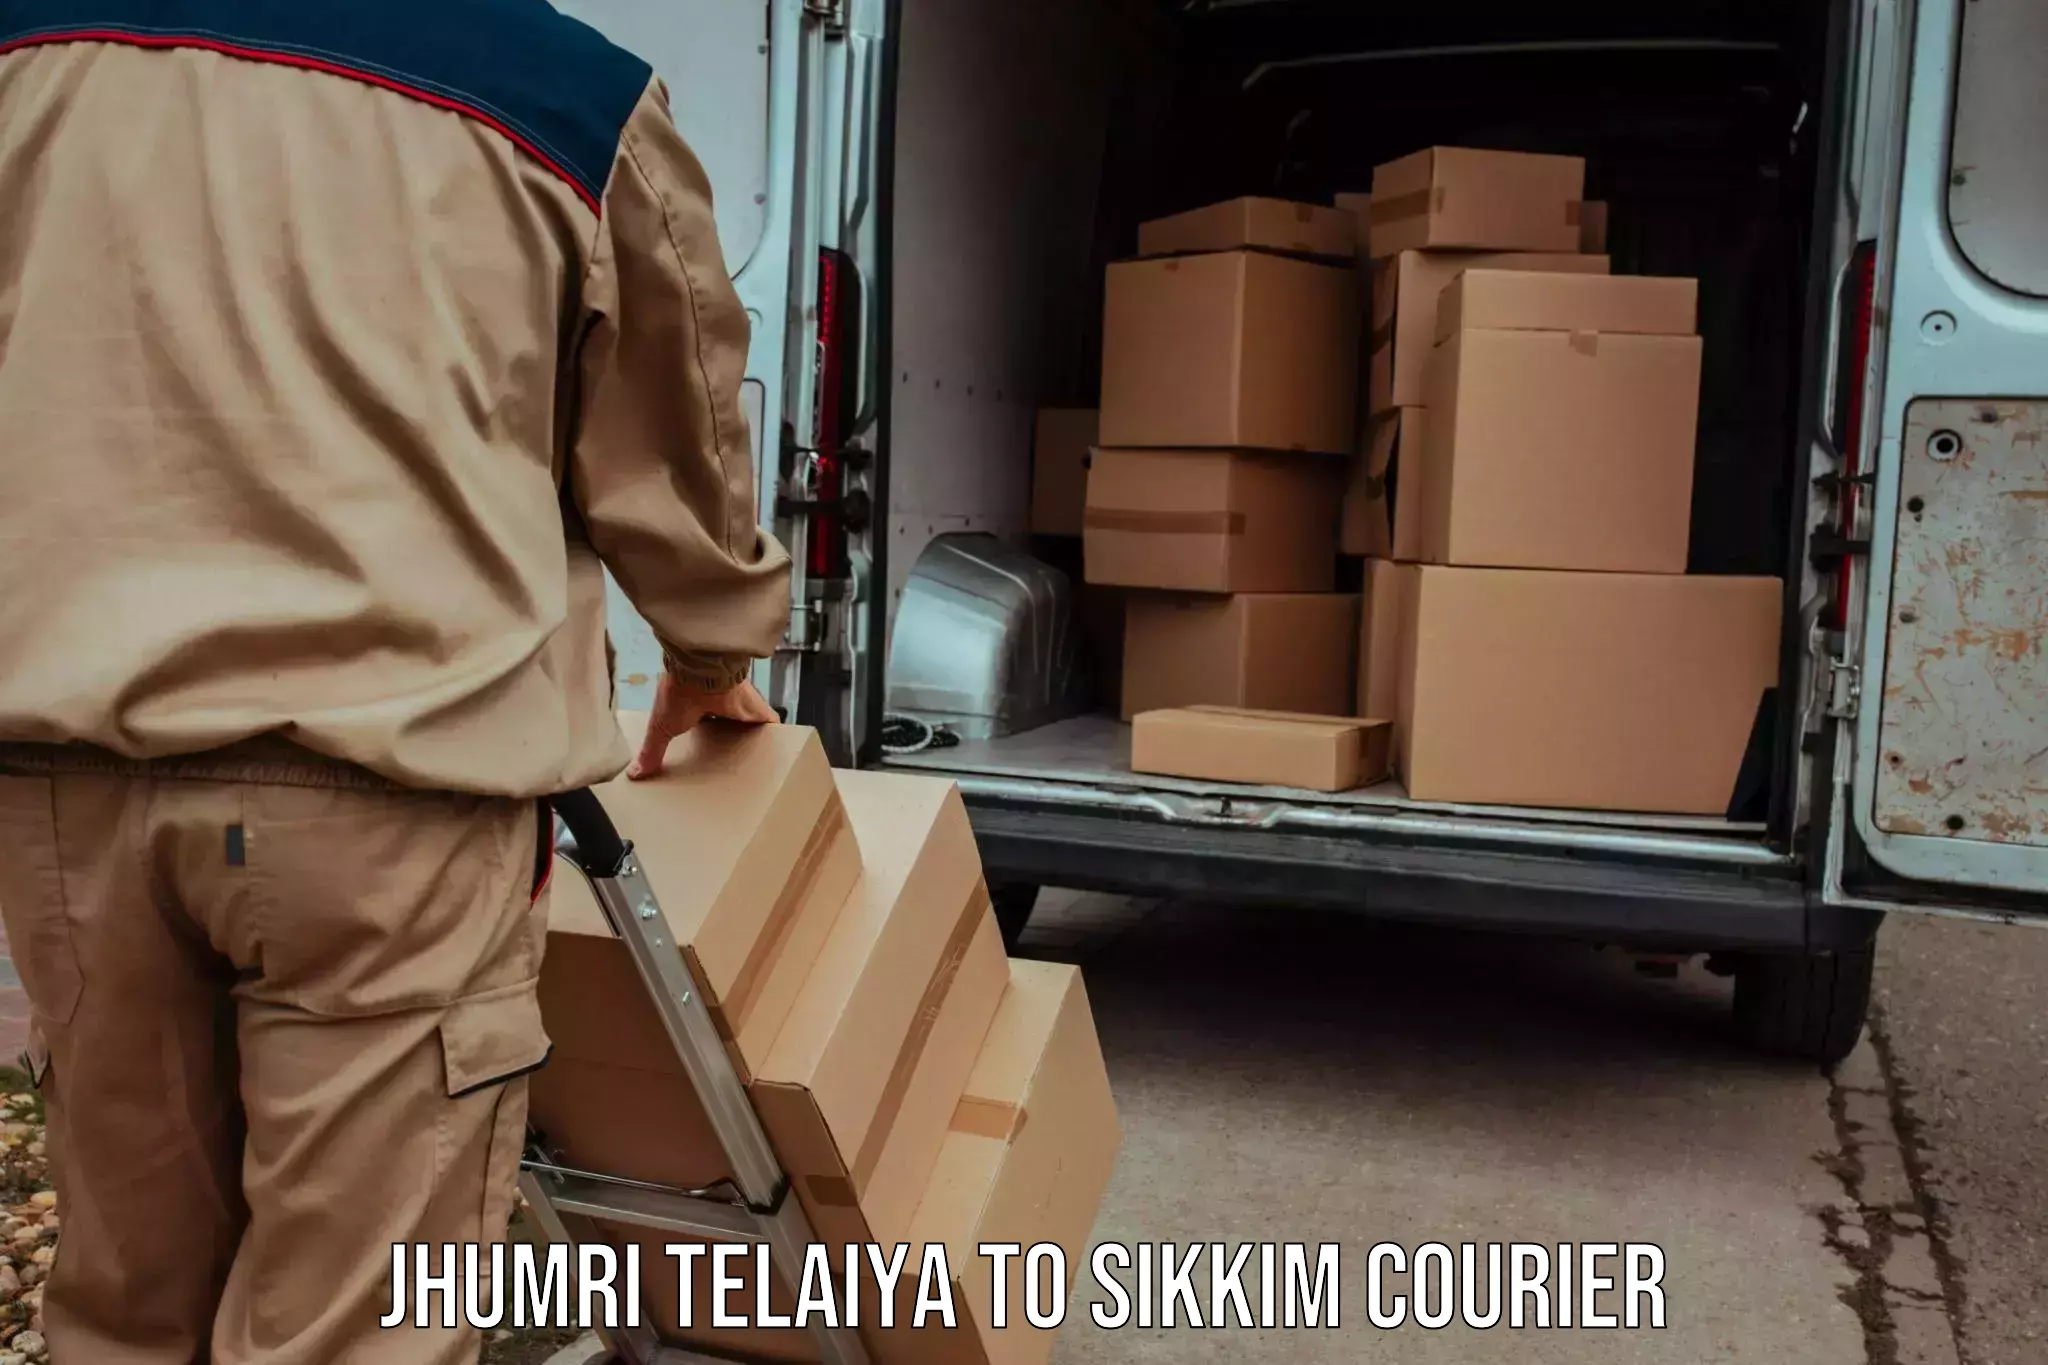 Urban courier service Jhumri Telaiya to Pelling